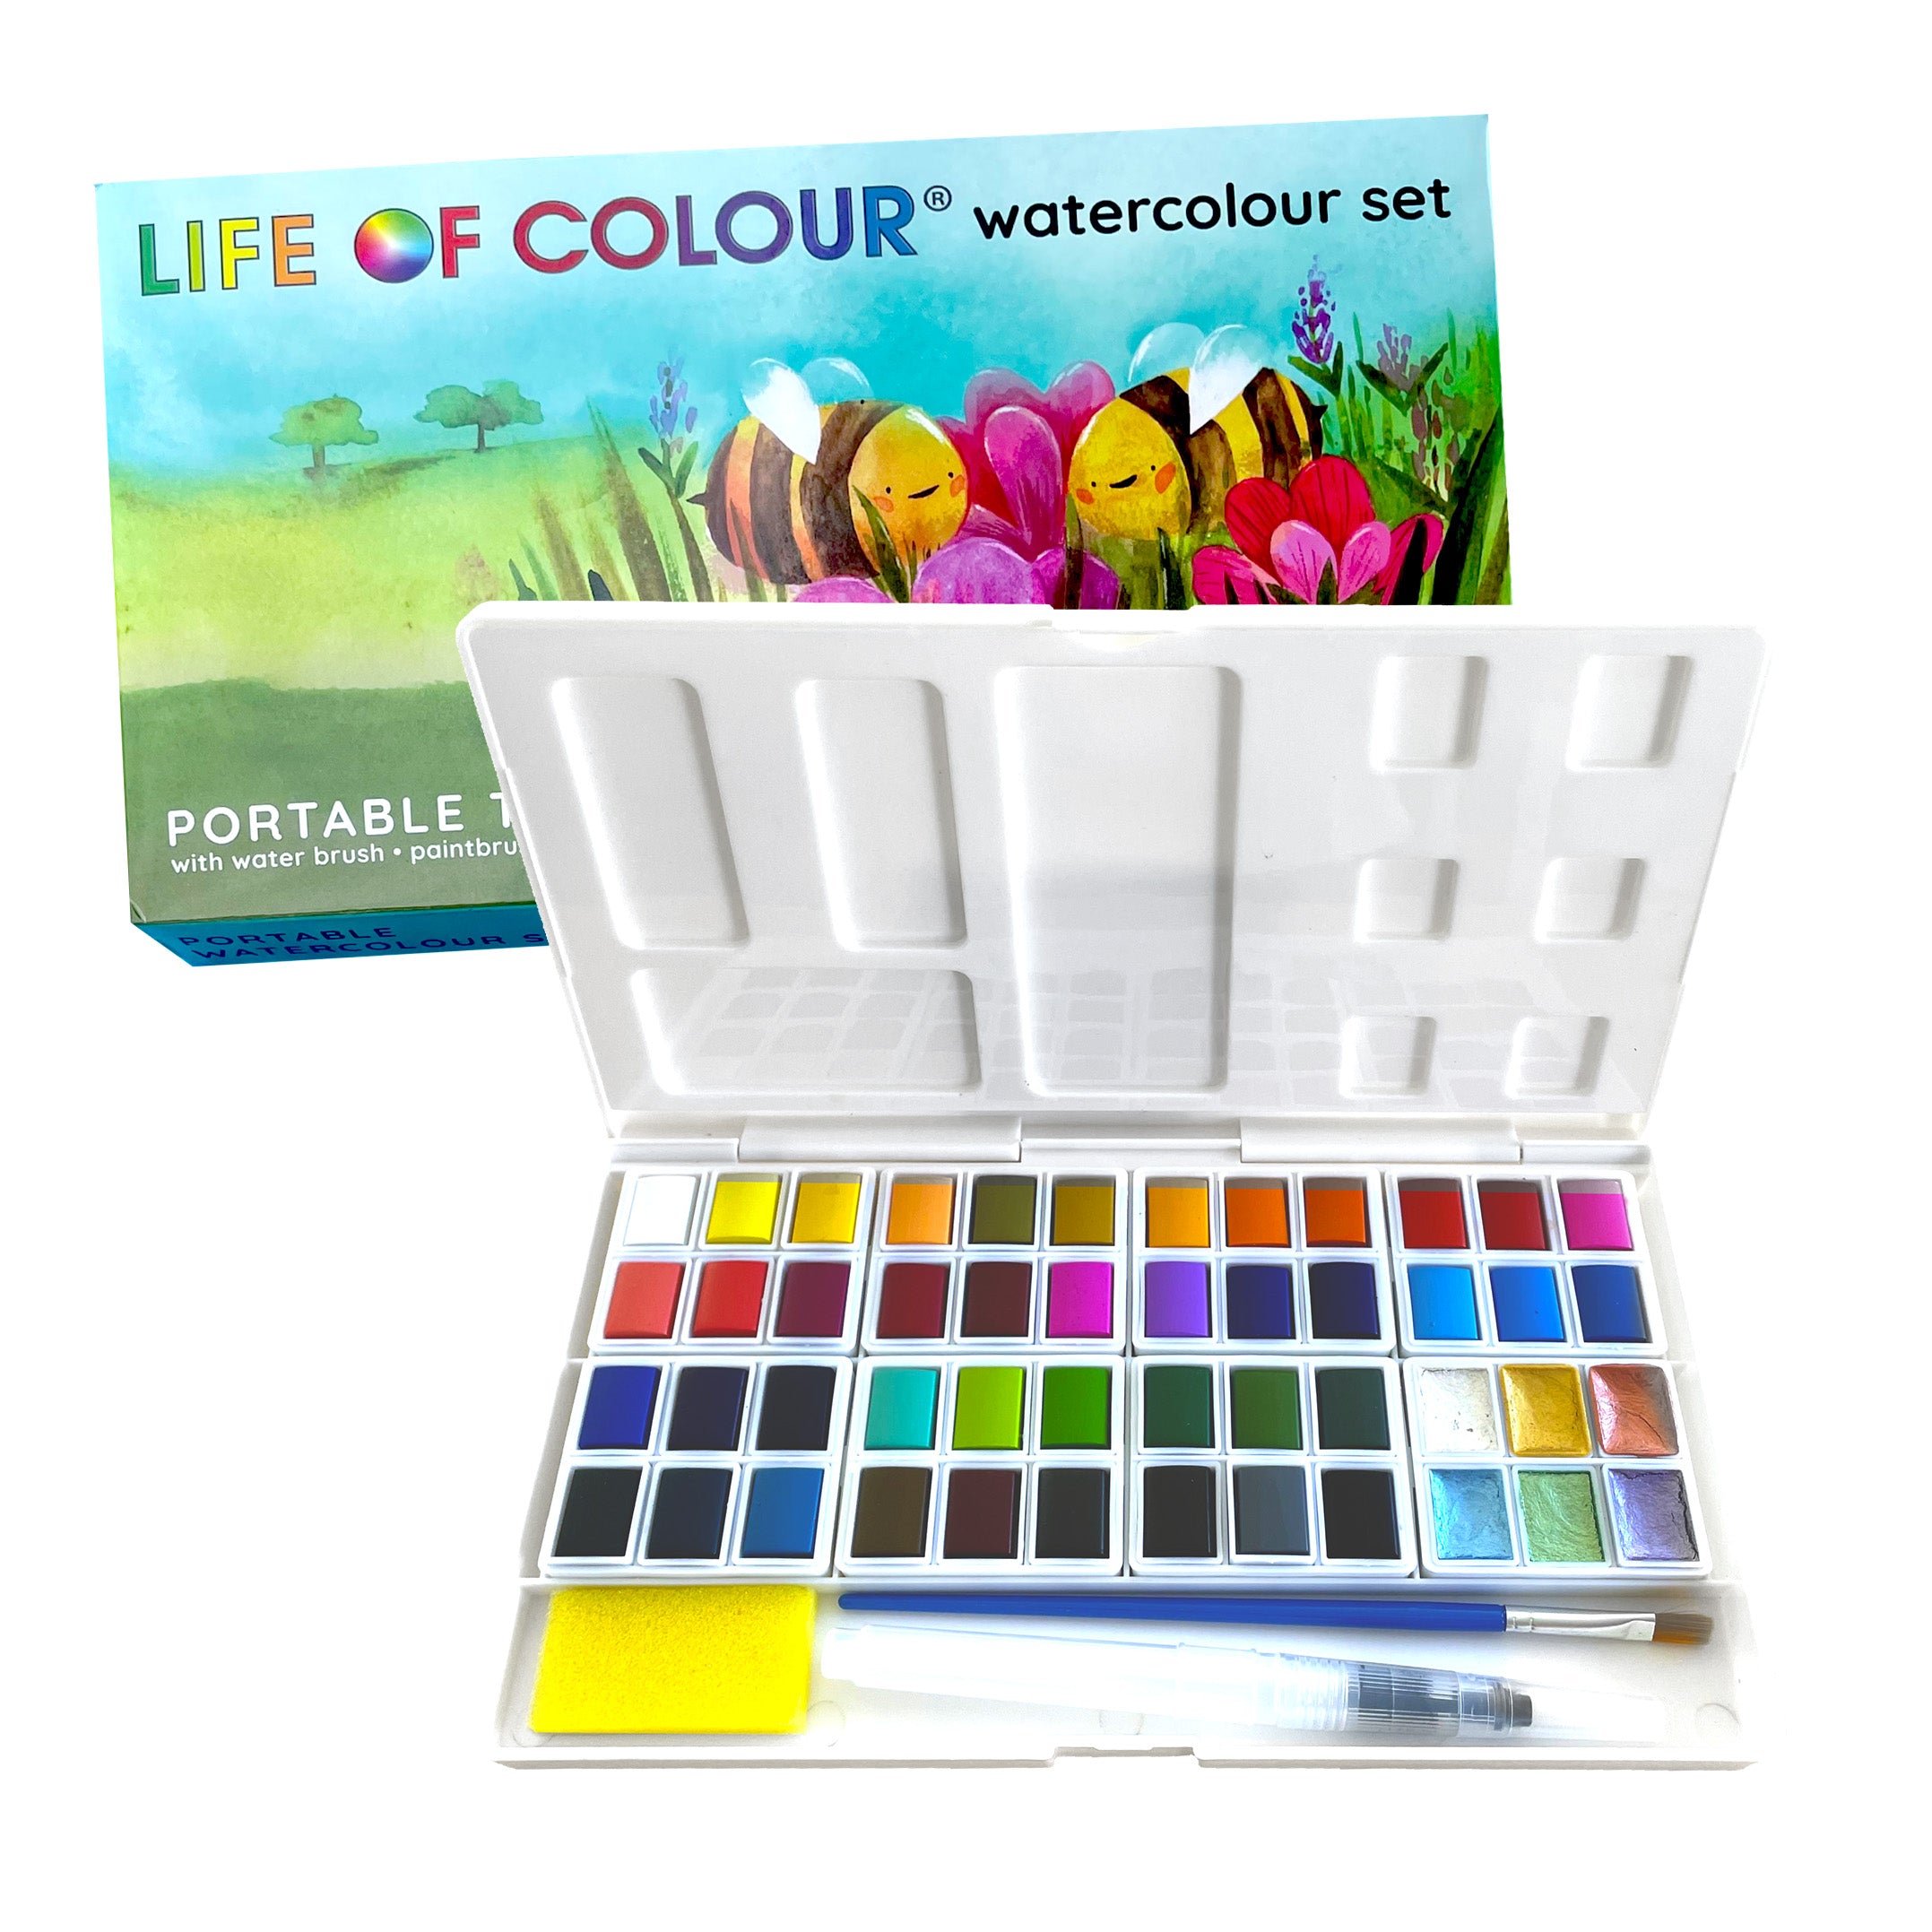 Artle Watercolor Paint Set, 53 Colors - Vibrant Watercolor Kit for Artists